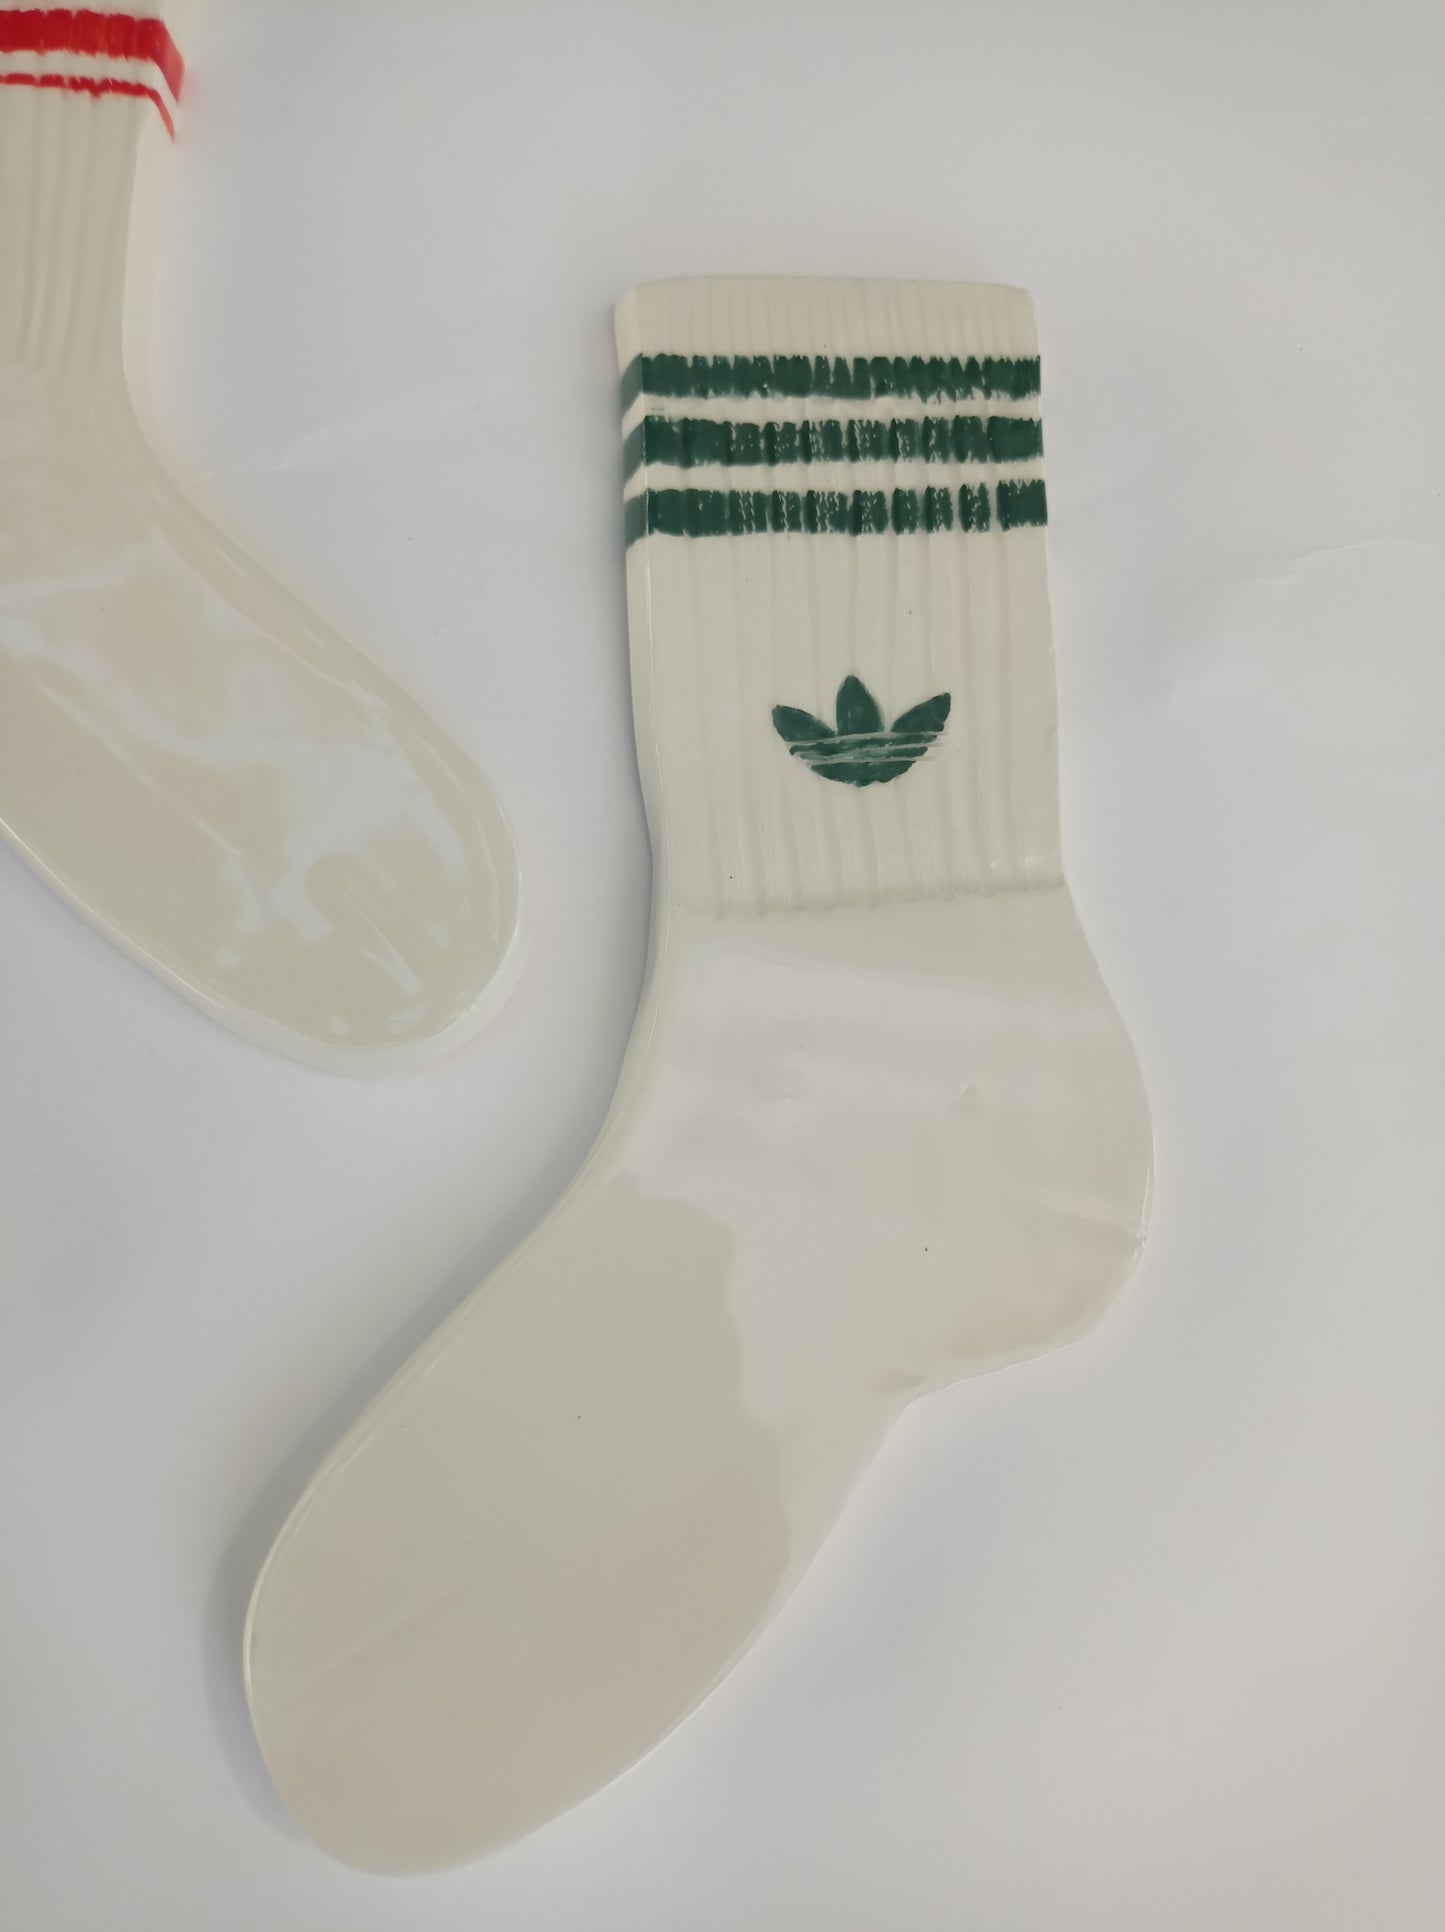 Calzini in ceramica modellati su modello di calze in spugna nnike e adidass